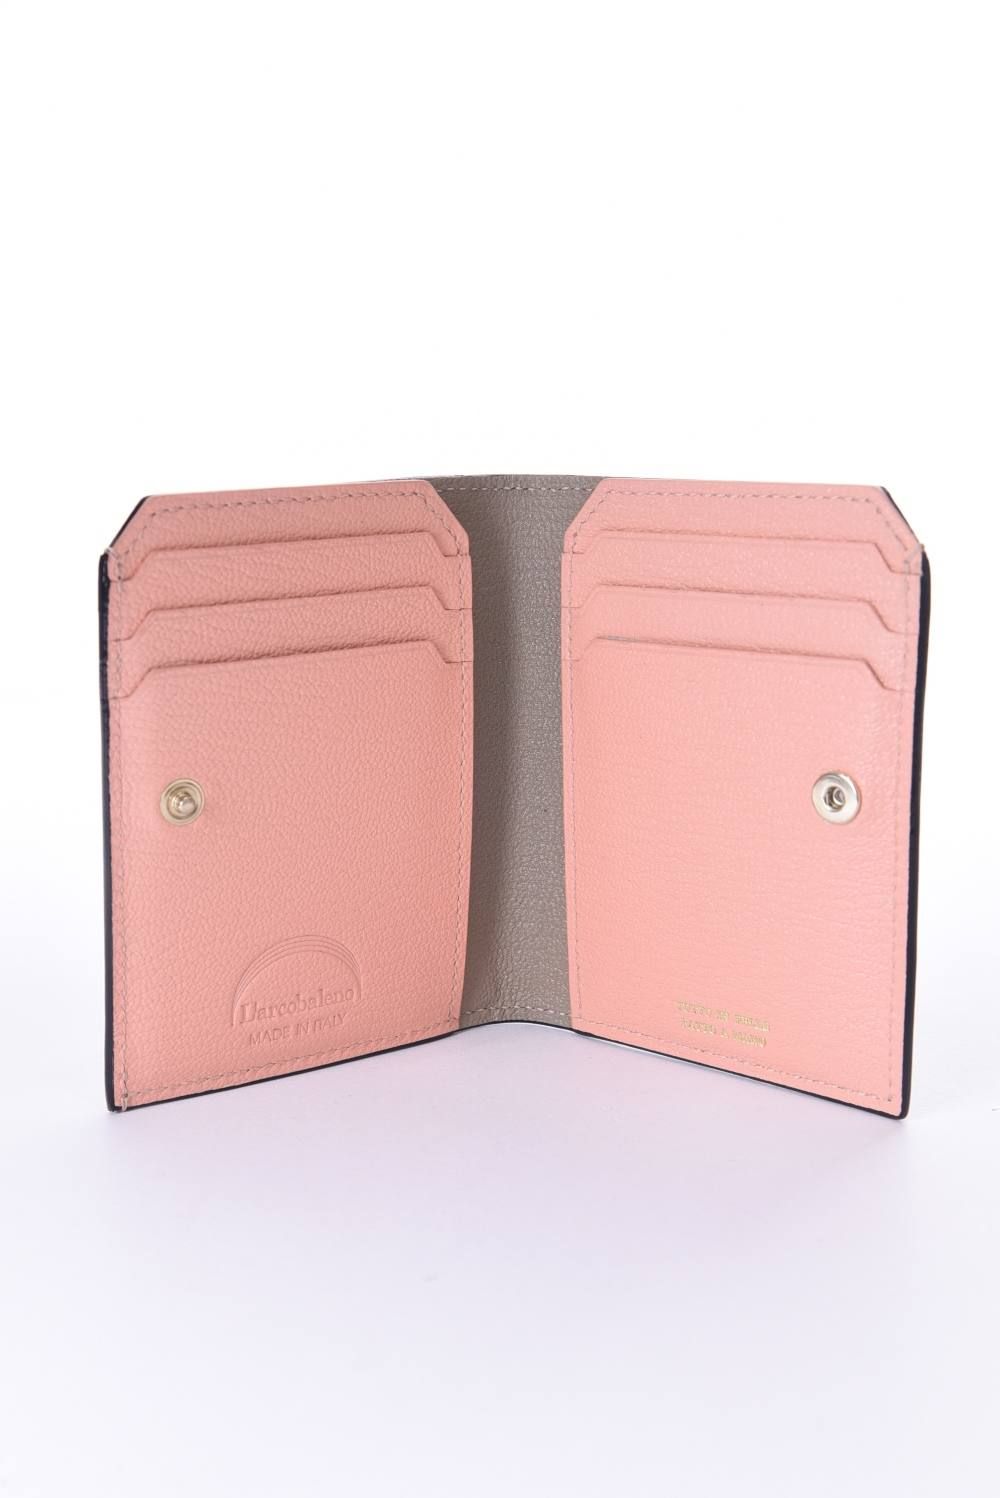 L'arcobaleno - CARD WALLET / LA501GT ゴートレザー 二つ折りスマート 